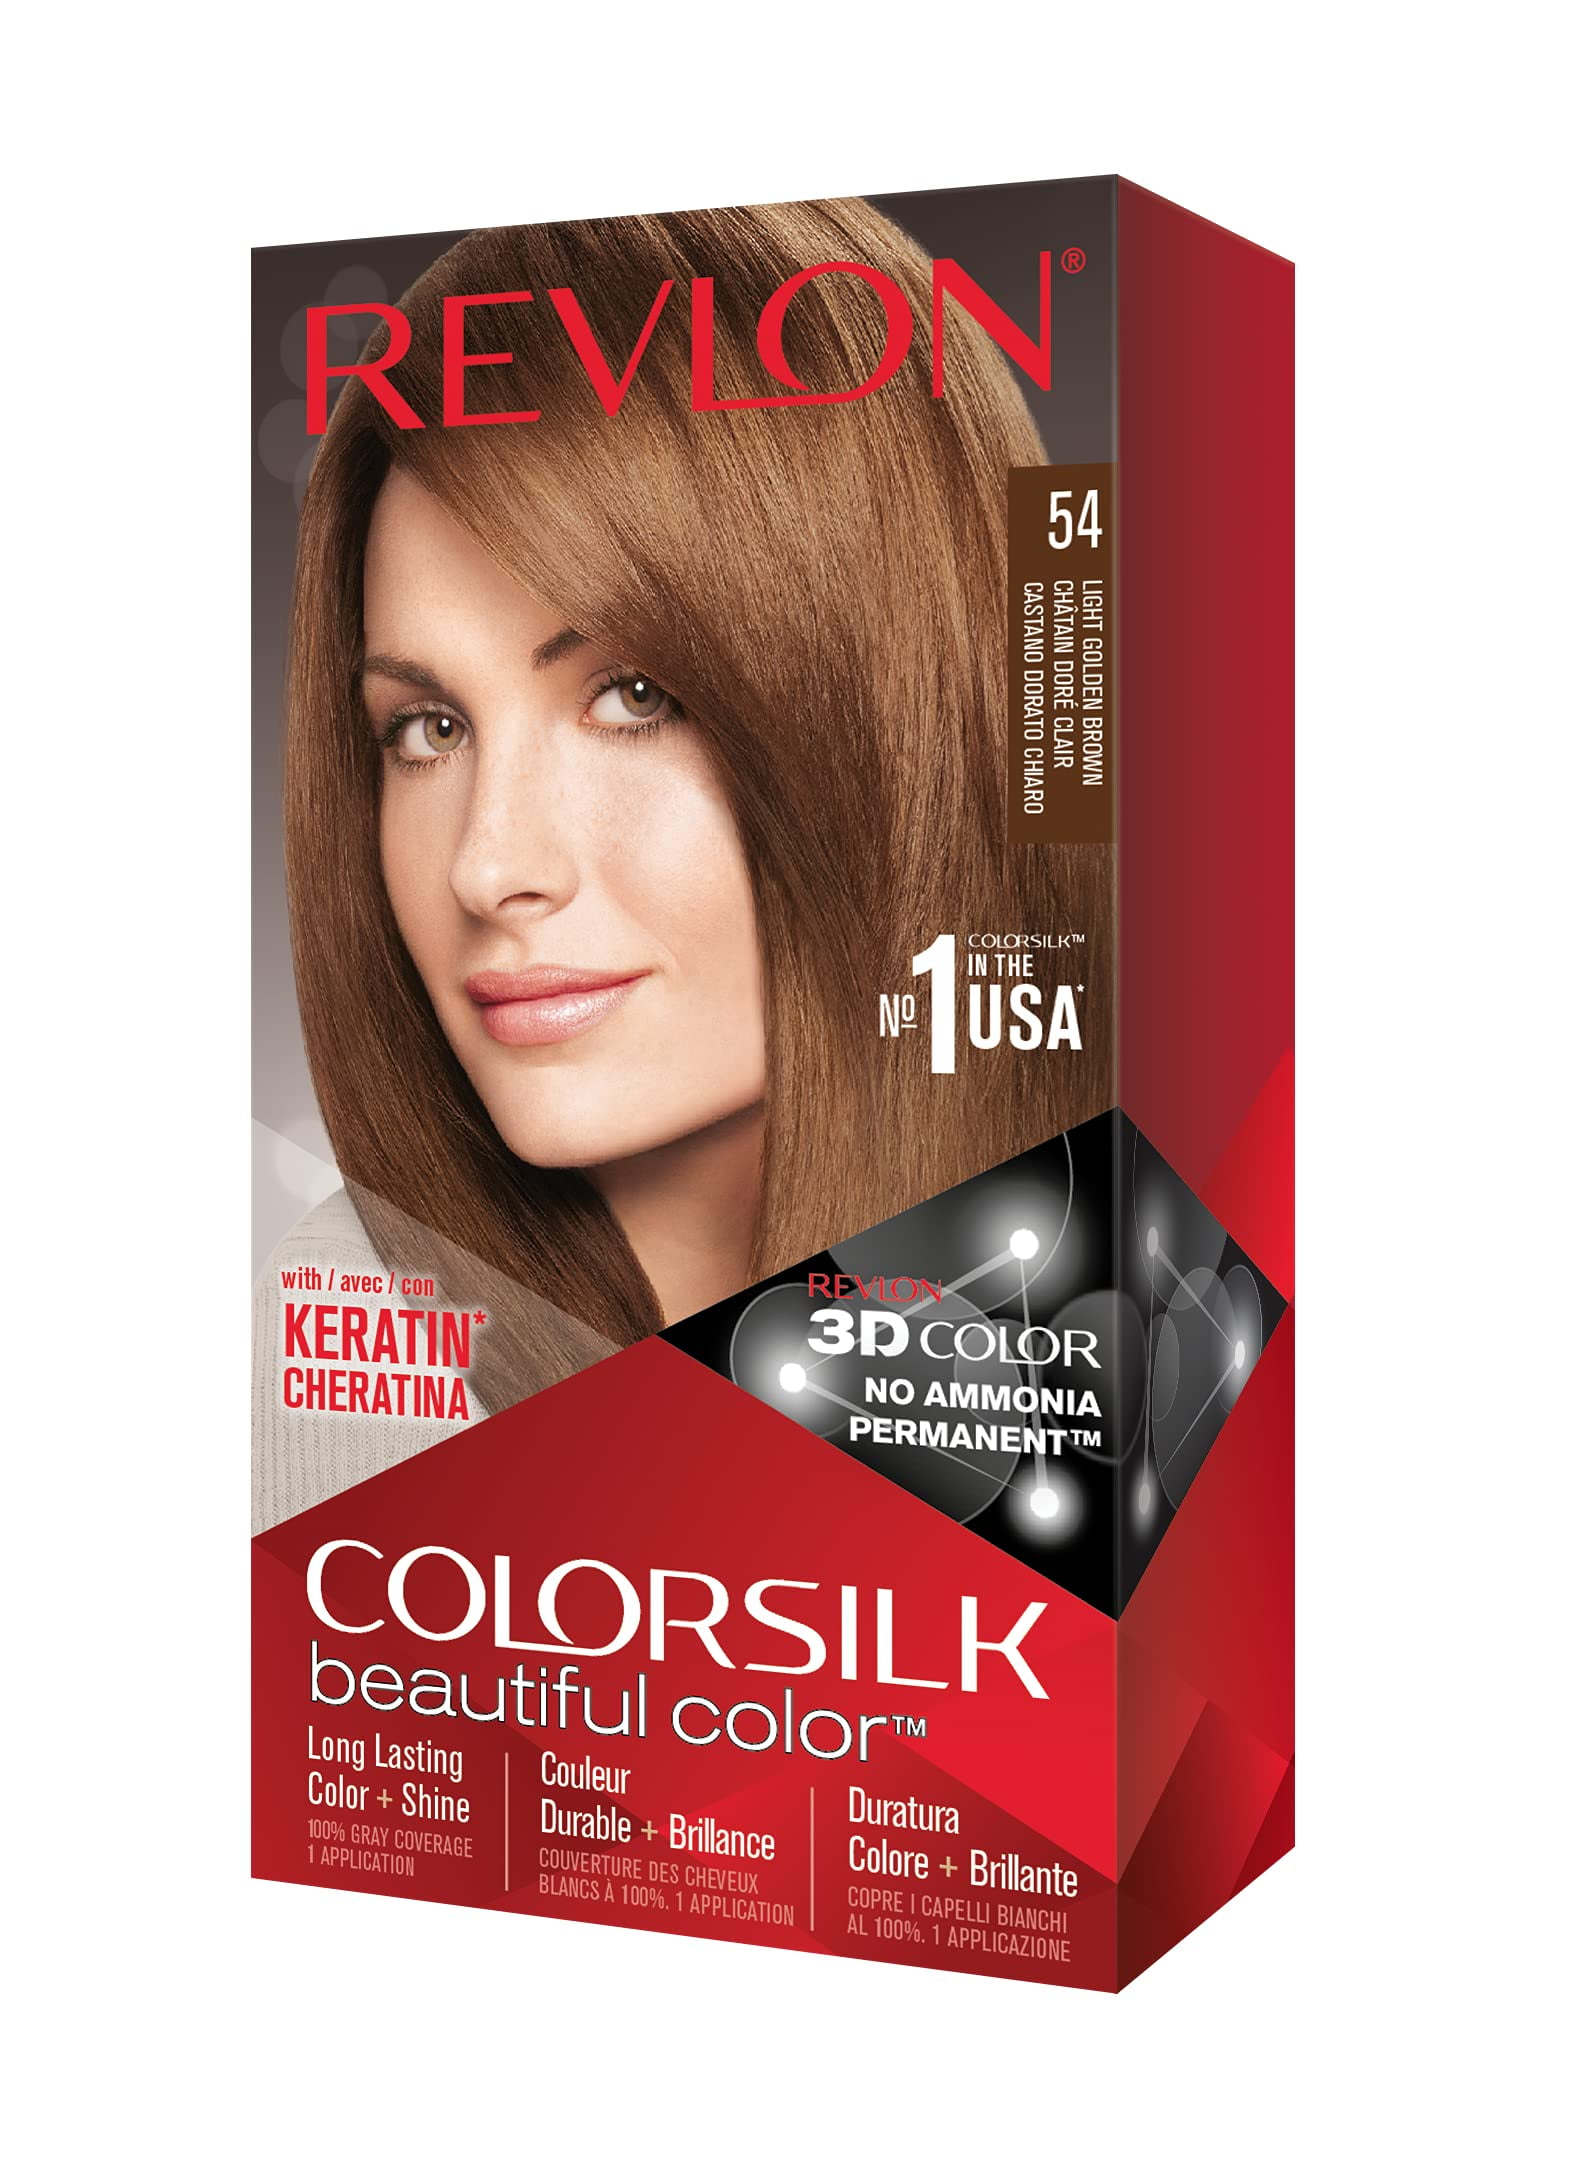 REVLON Colorsilk Beautiful Color Permanent Hair Color with 3D Gel